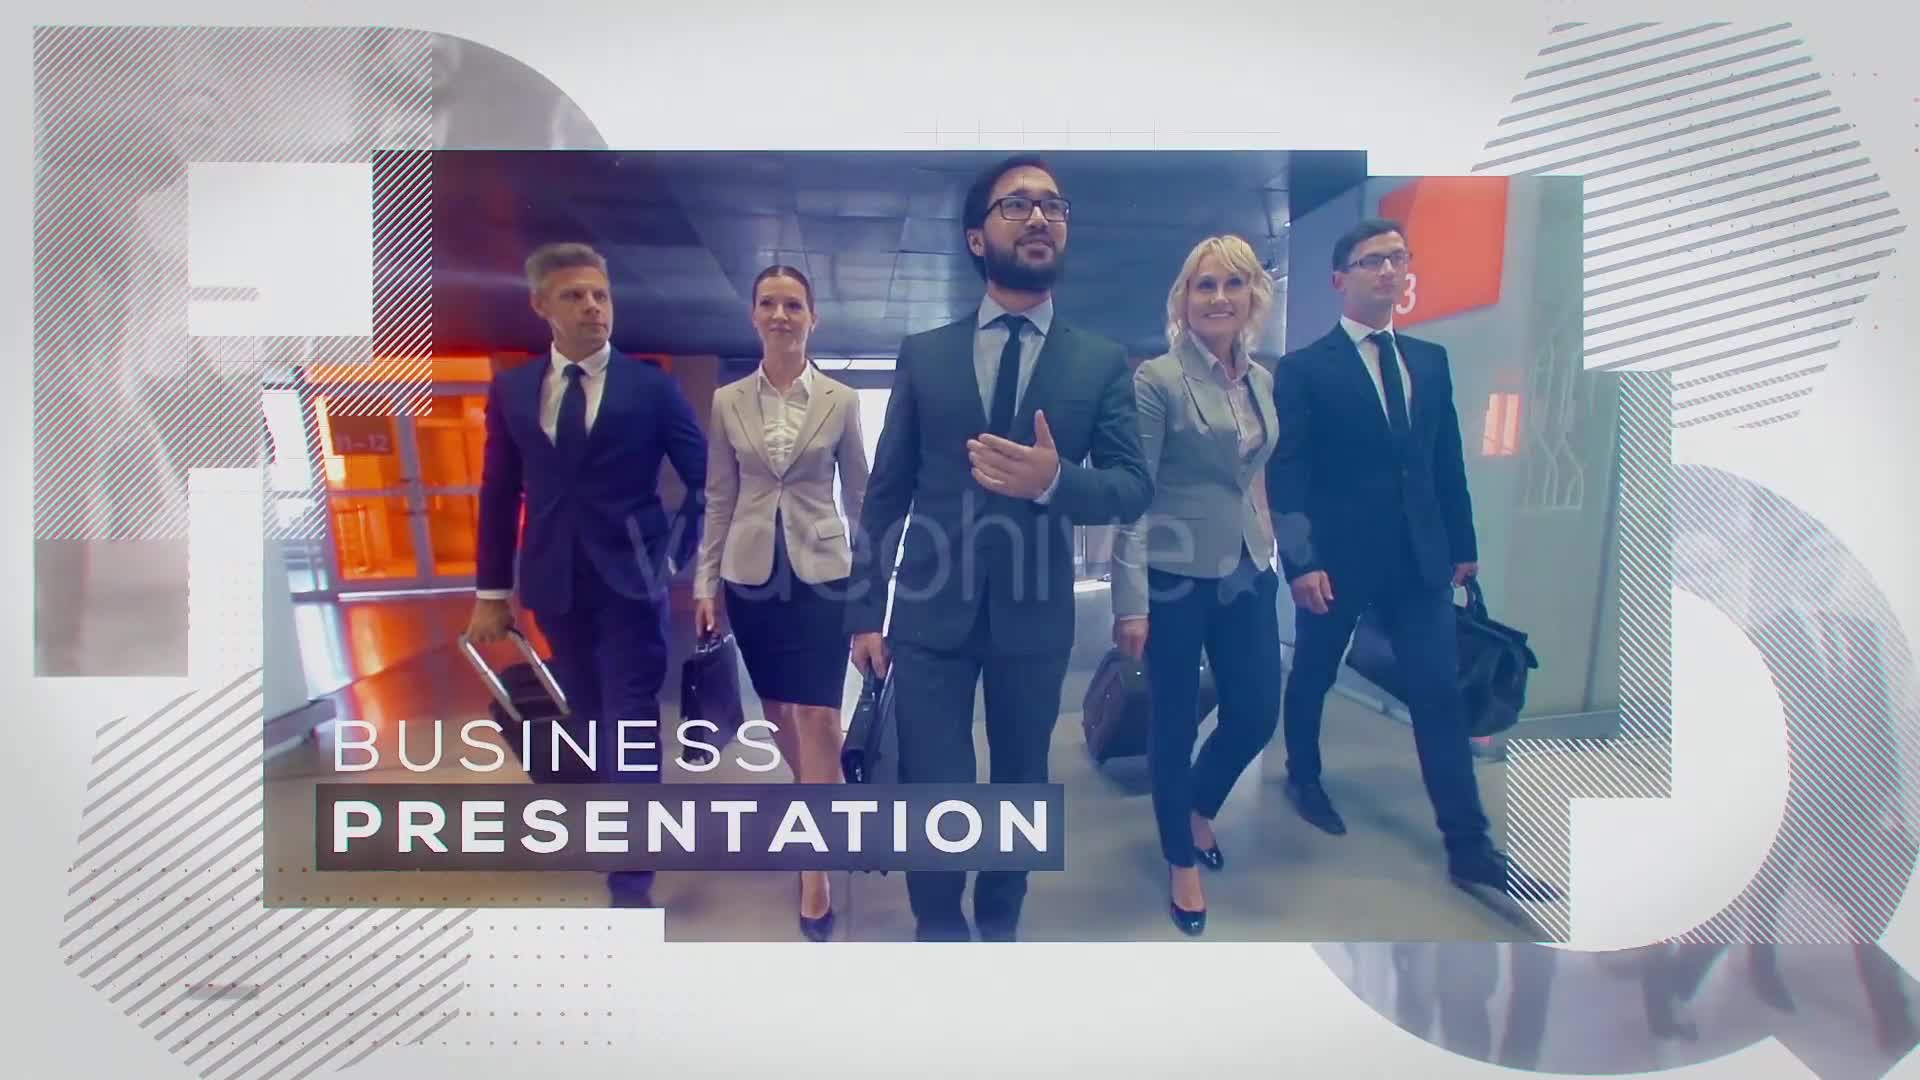 Business Presentation Videohive 21994691 Premiere Pro Image 1